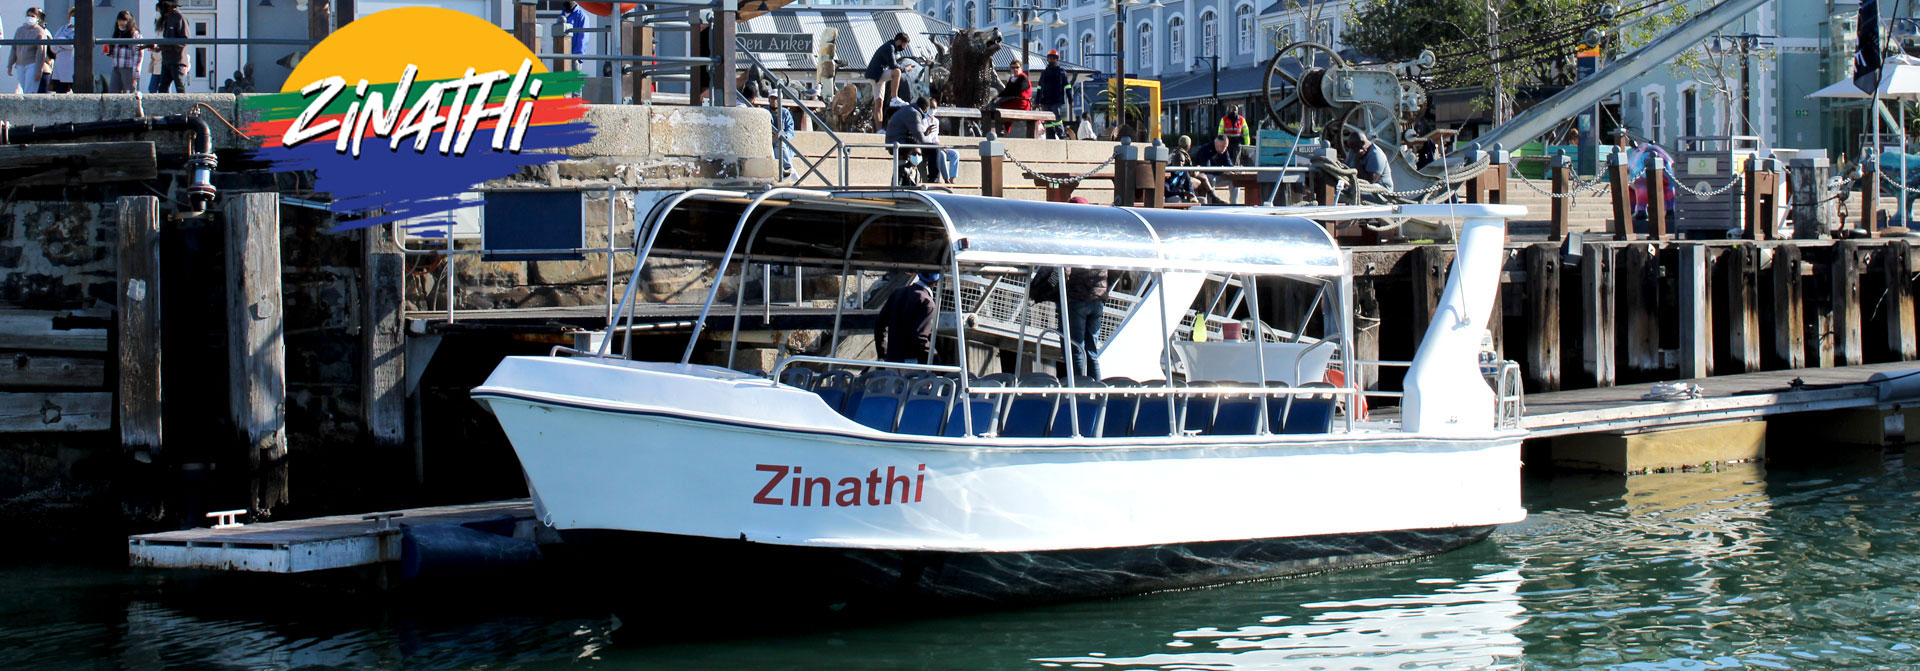 Zinathi Harbour Cruise Banner Image